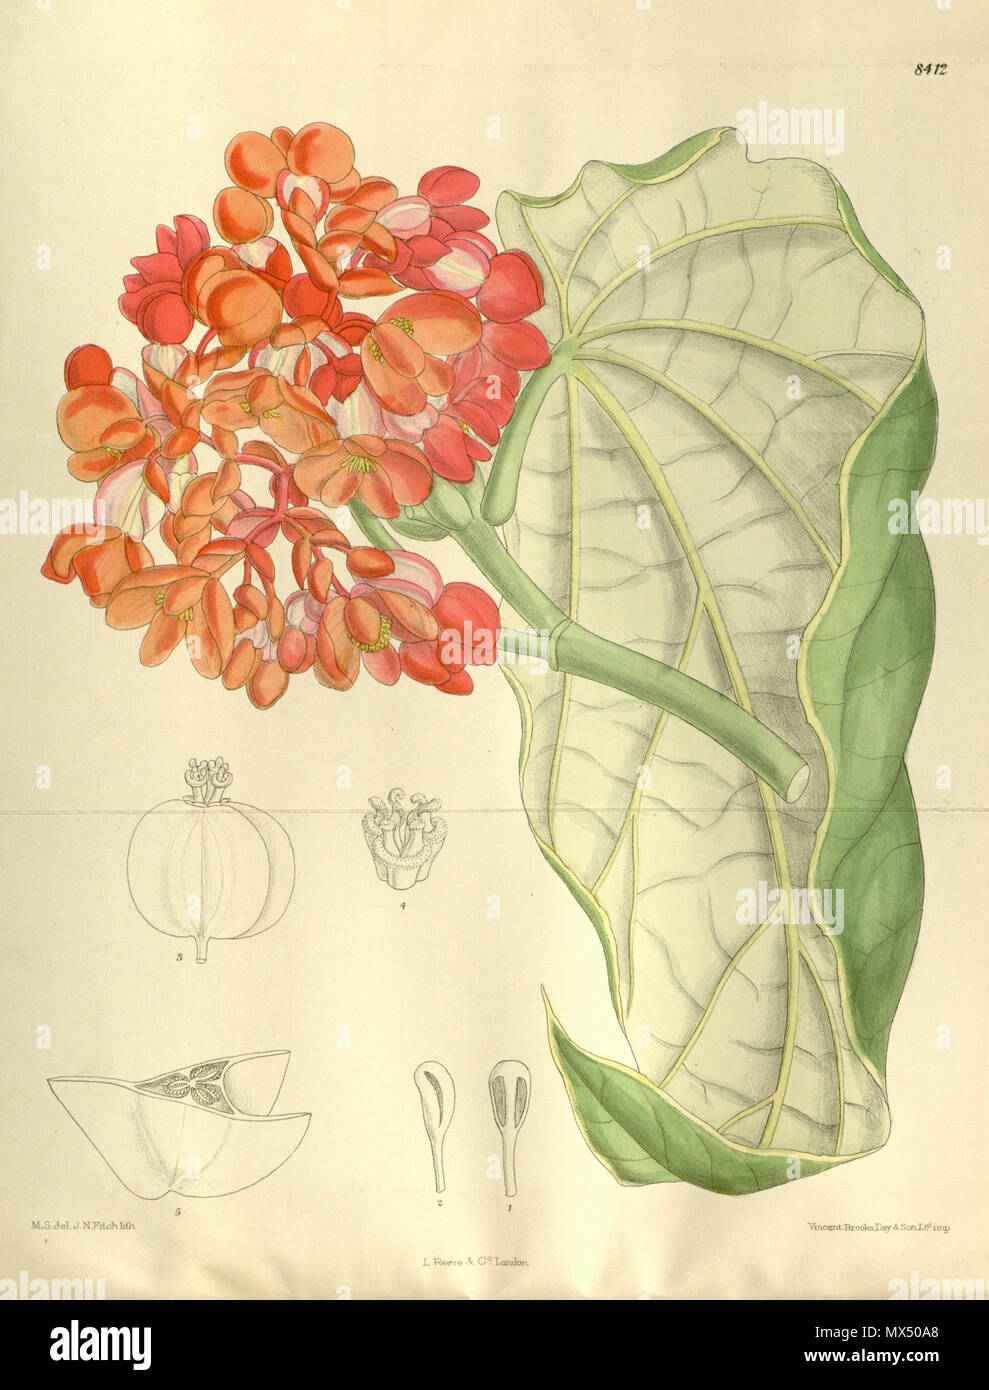 . Begonia dichroa (= Begonia maculata), Begoniaceae . 1912. M.S. del, J.N.Fitch, lith. 78 Begonia dichroa 138-8412 Stock Photo